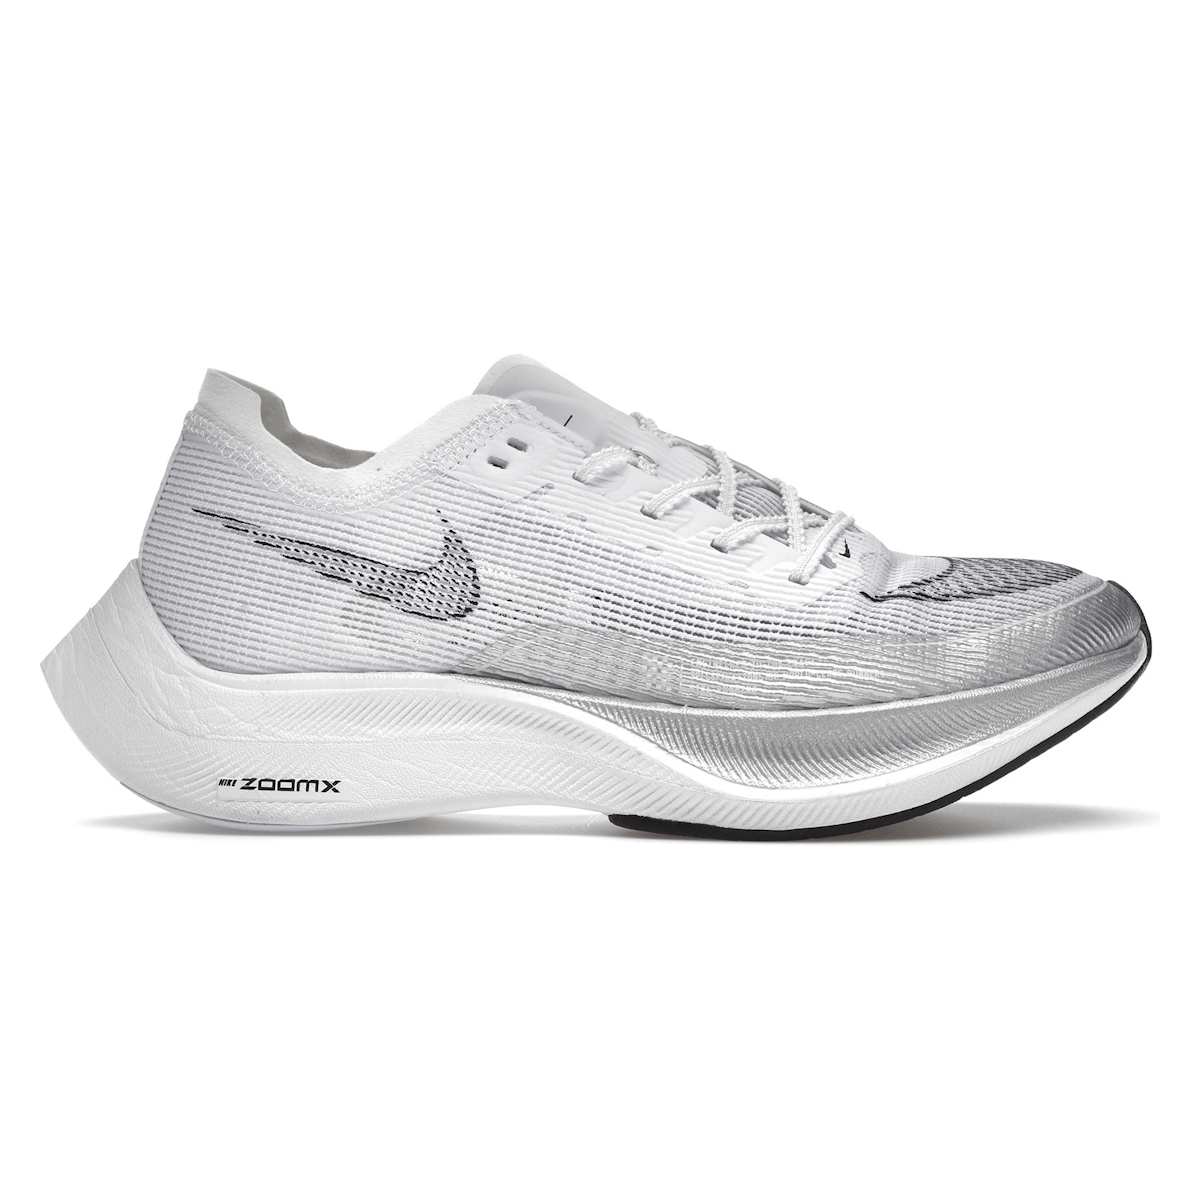 Nike ZoomX Vaporfly Next% 2 White Metallic Silver